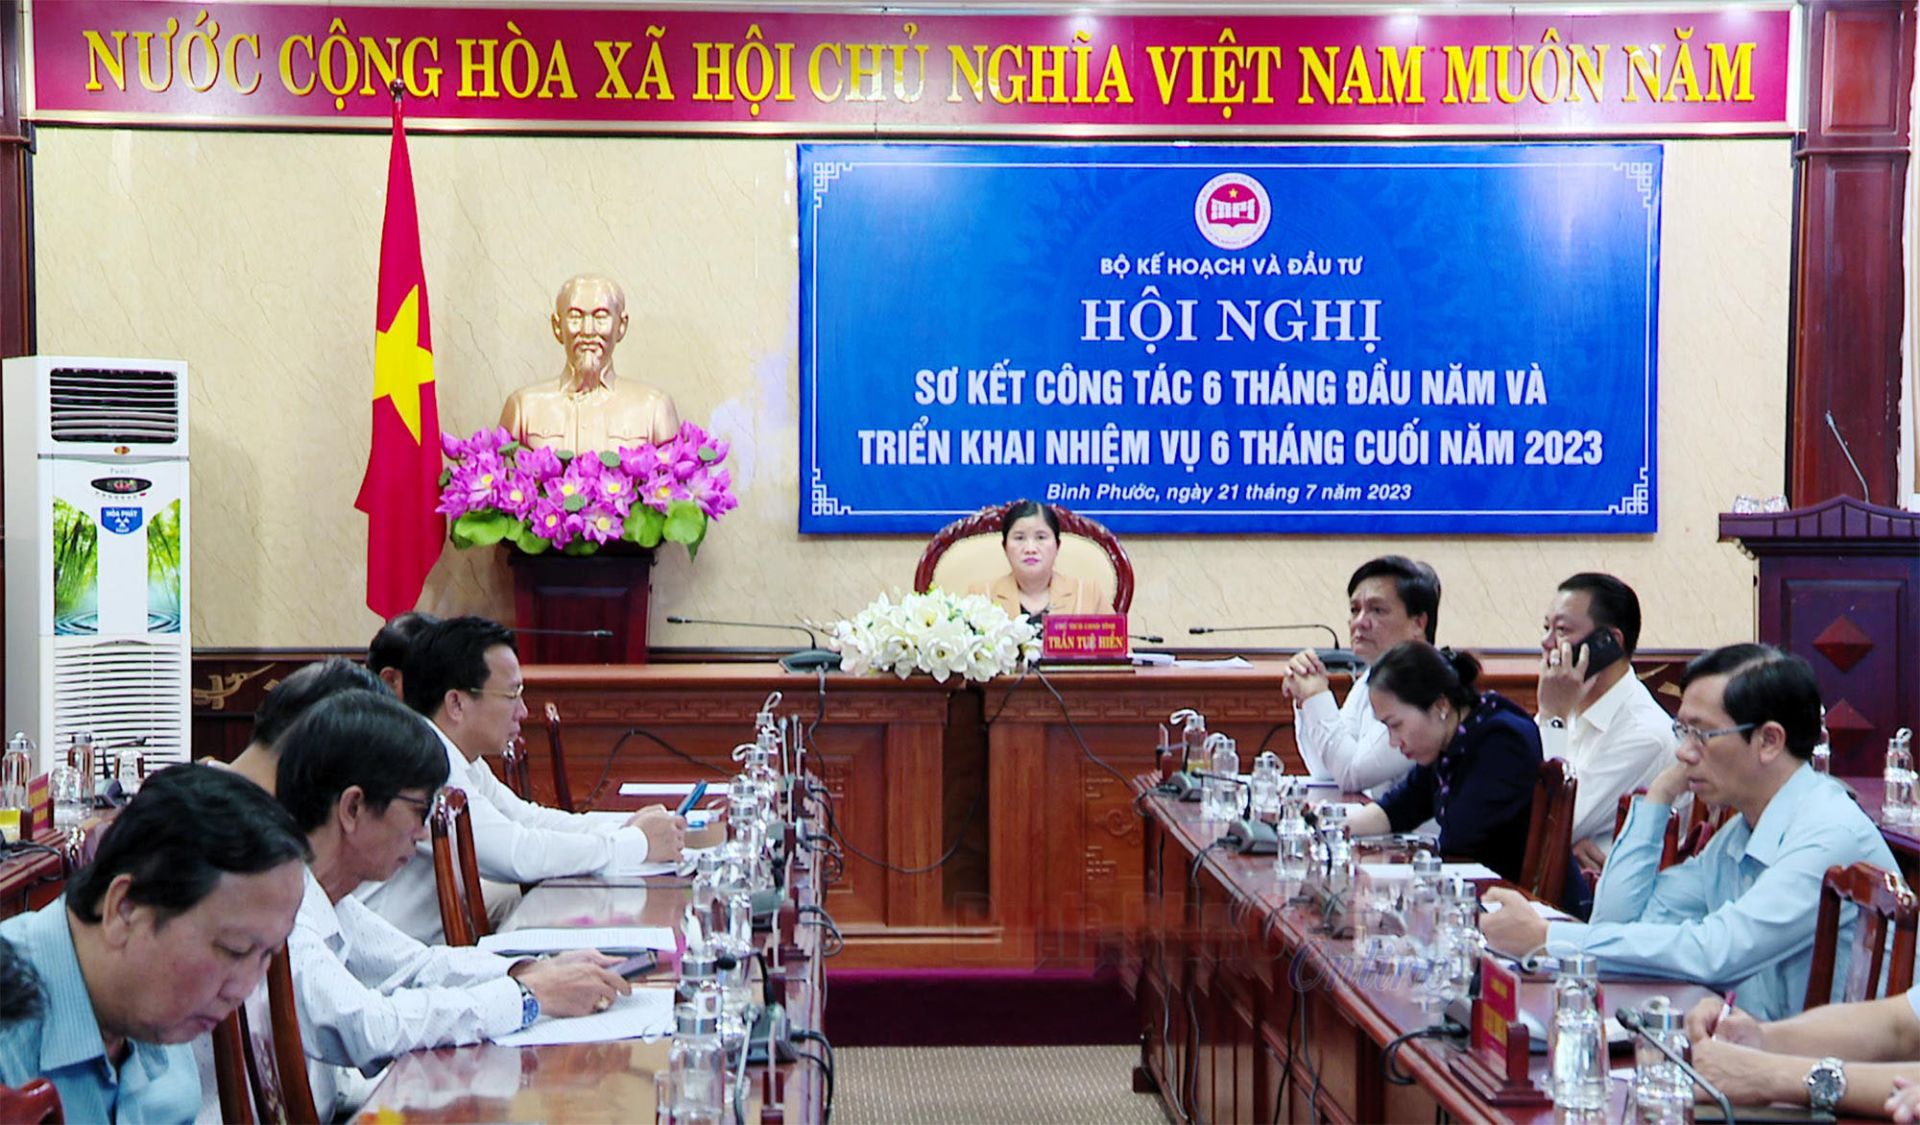 Chủ tịch UBND tỉnh Trần Tuệ Hiền và lãnh đạo các sở, ngành liên quan dự hội nghị tại điểm cầu Bình Phước